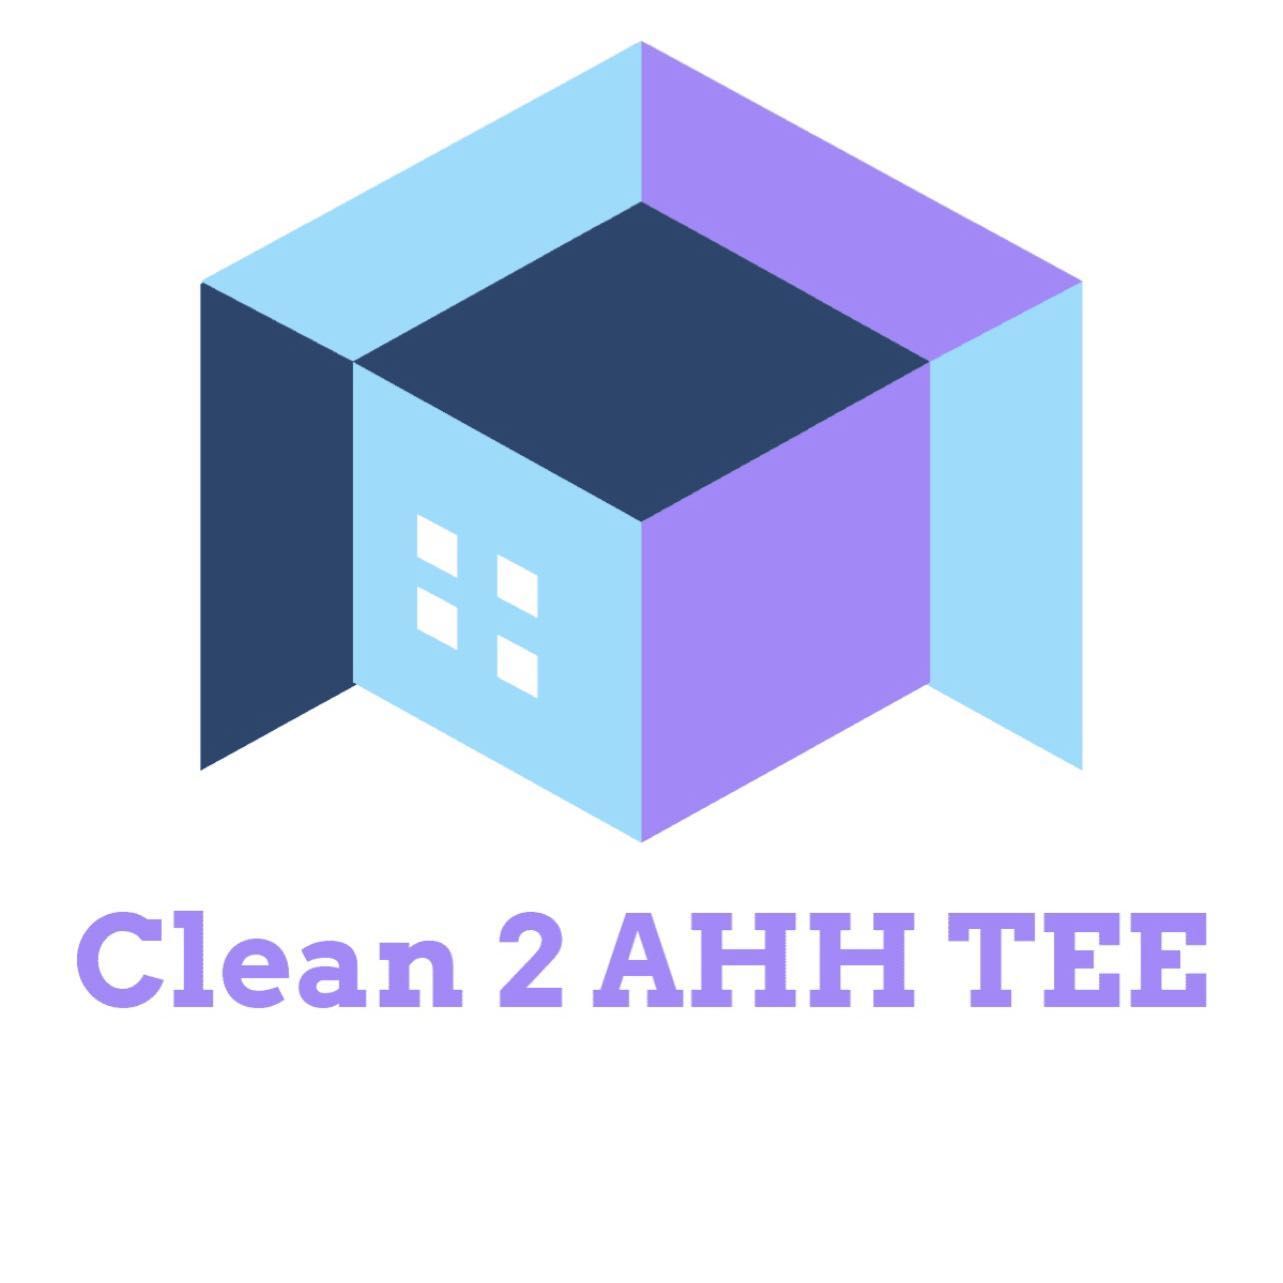 Clean 2 Ahh Tee, Lauderhill, 33313